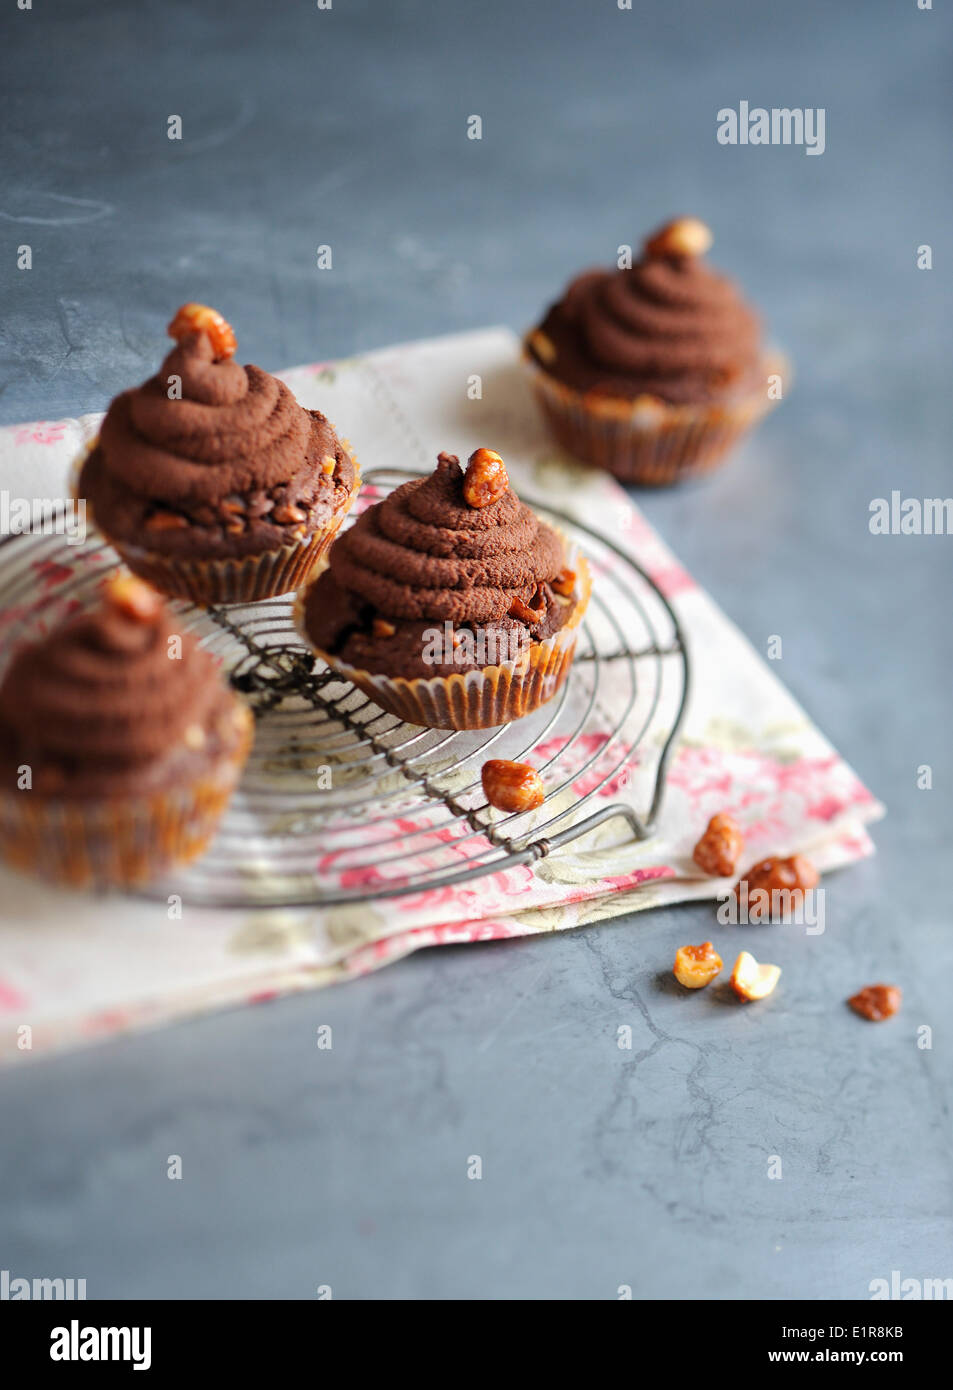 Chocolate and peanut cupcakes Stock Photo